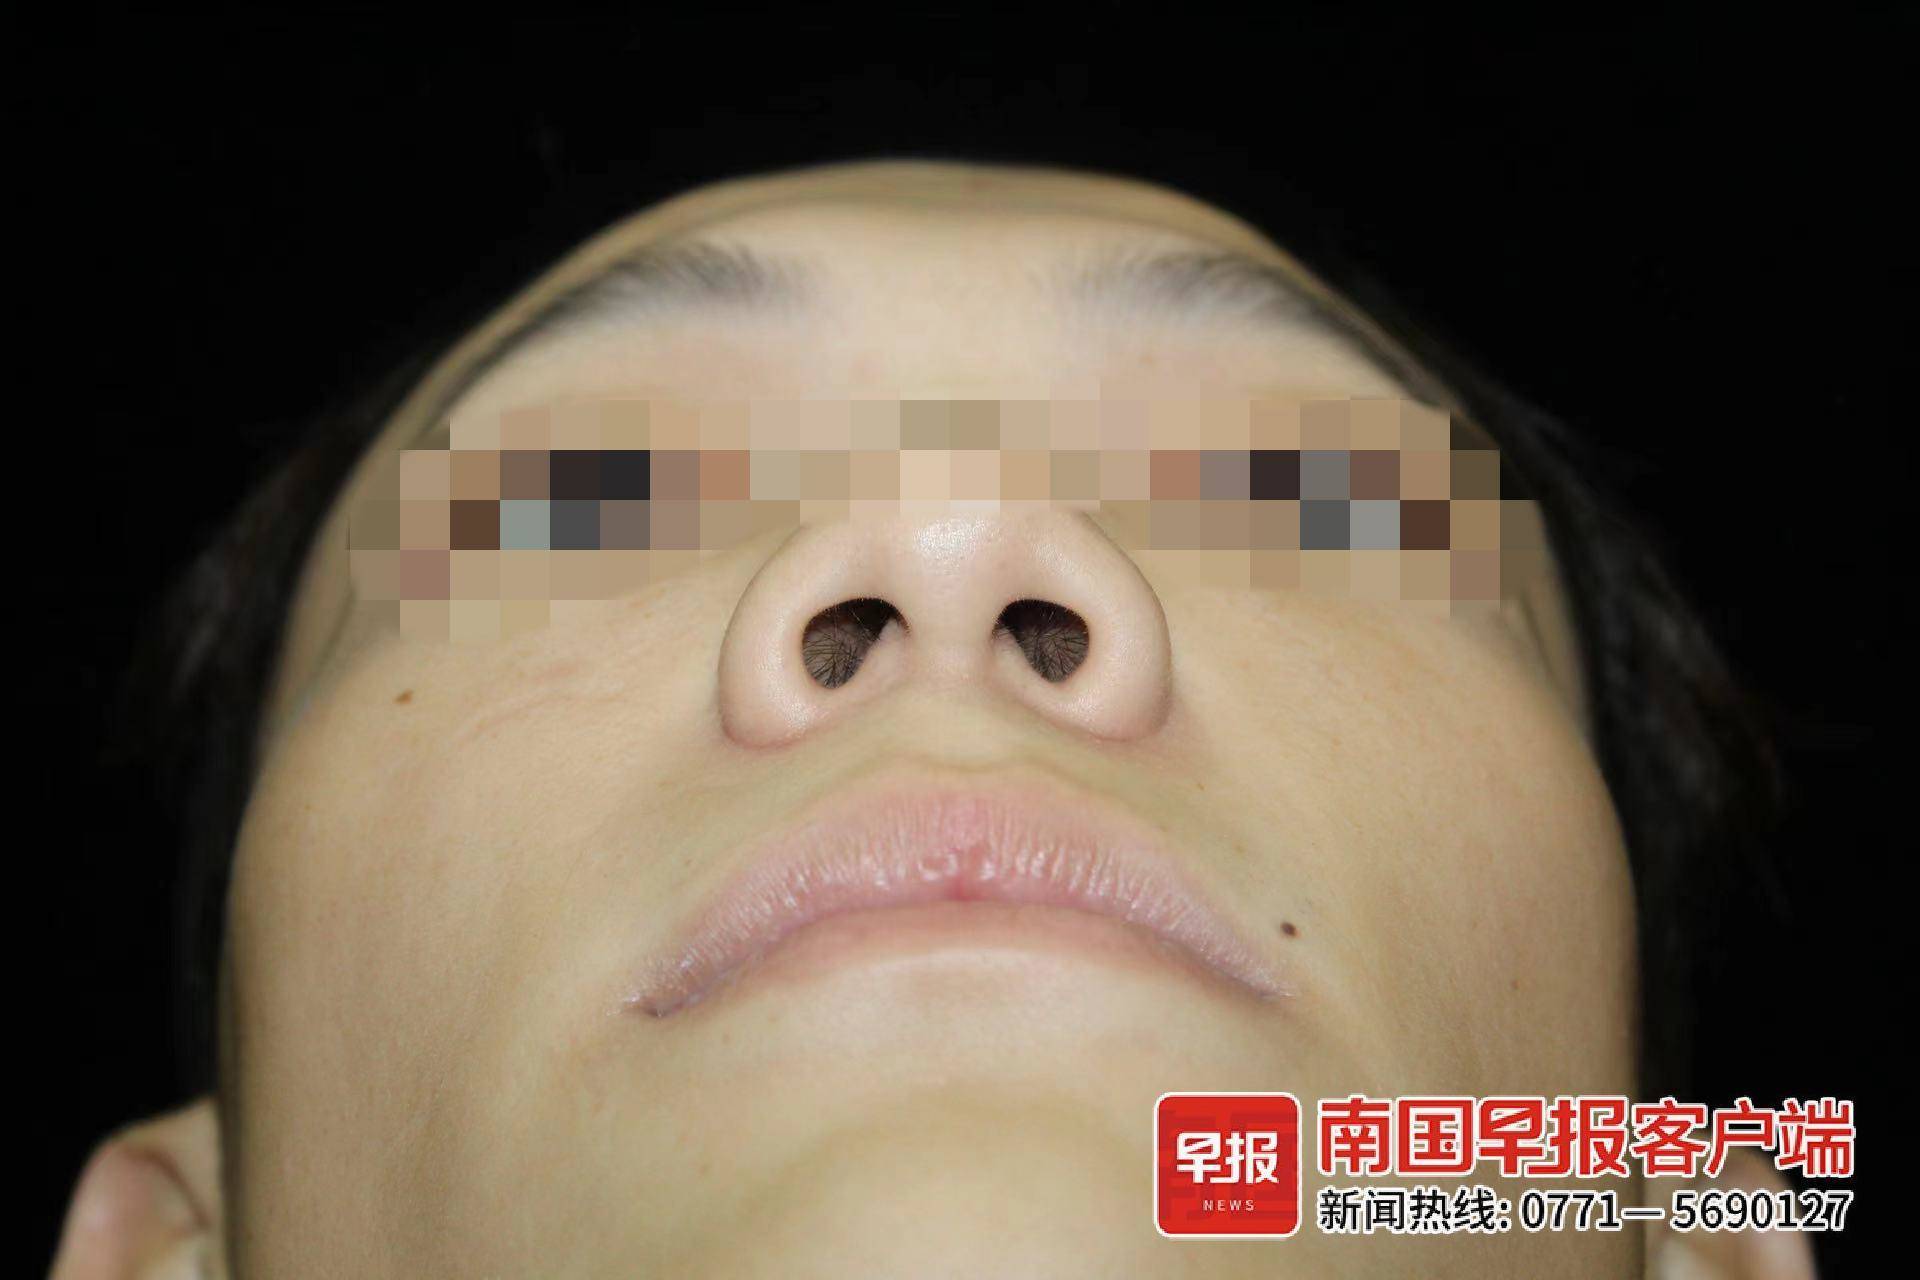 今年1月,他到格林美菲江南万达广场店花费6780元做鼻子整形手术,以